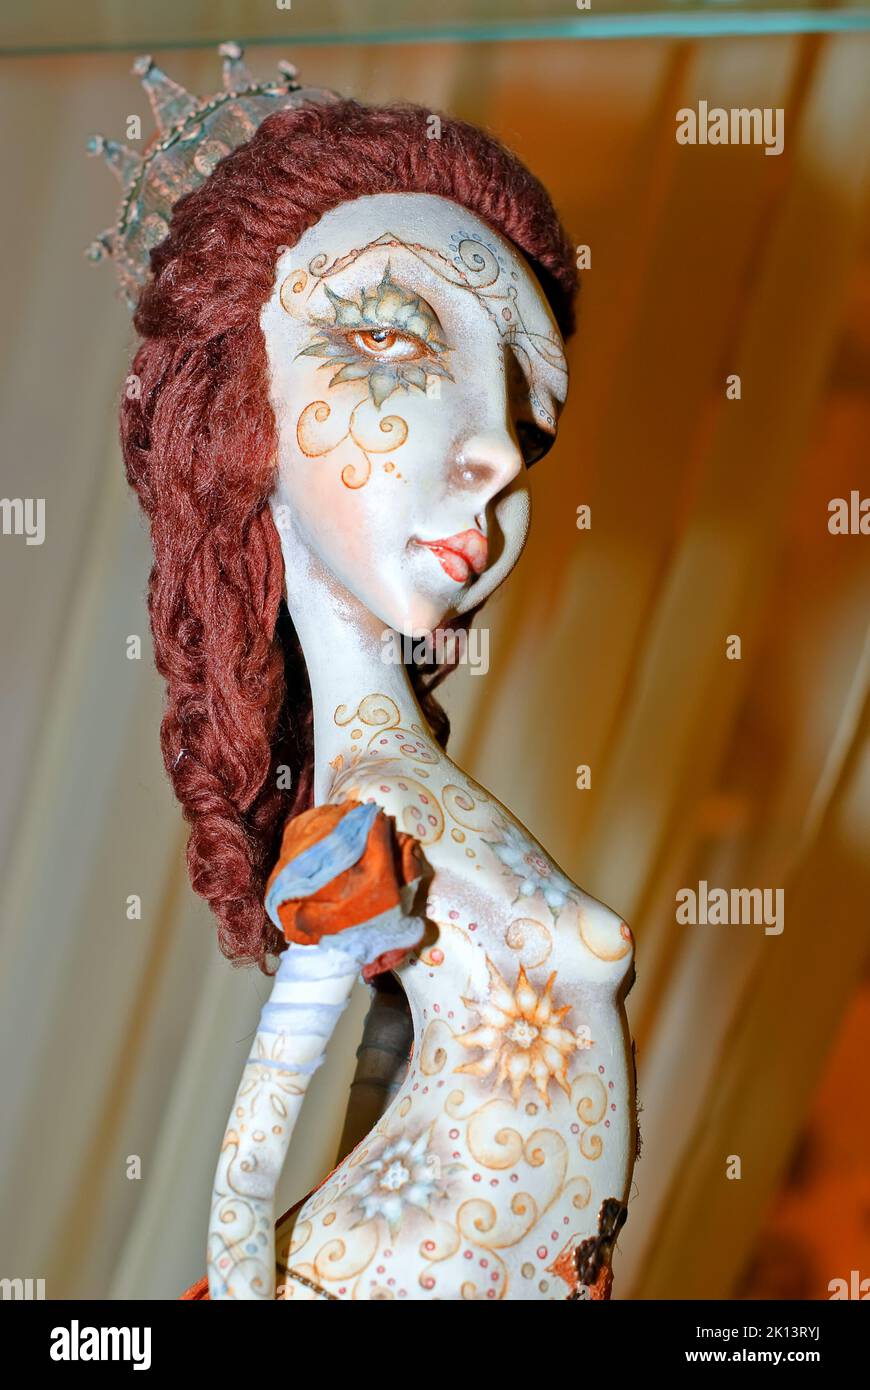 Une poupée à collectionner, une déesse ethnique détaillée, est exposée à l'exposition de poupées de l'auteur sur 09 janvier 2012 à Kiev, en Ukraine Banque D'Images